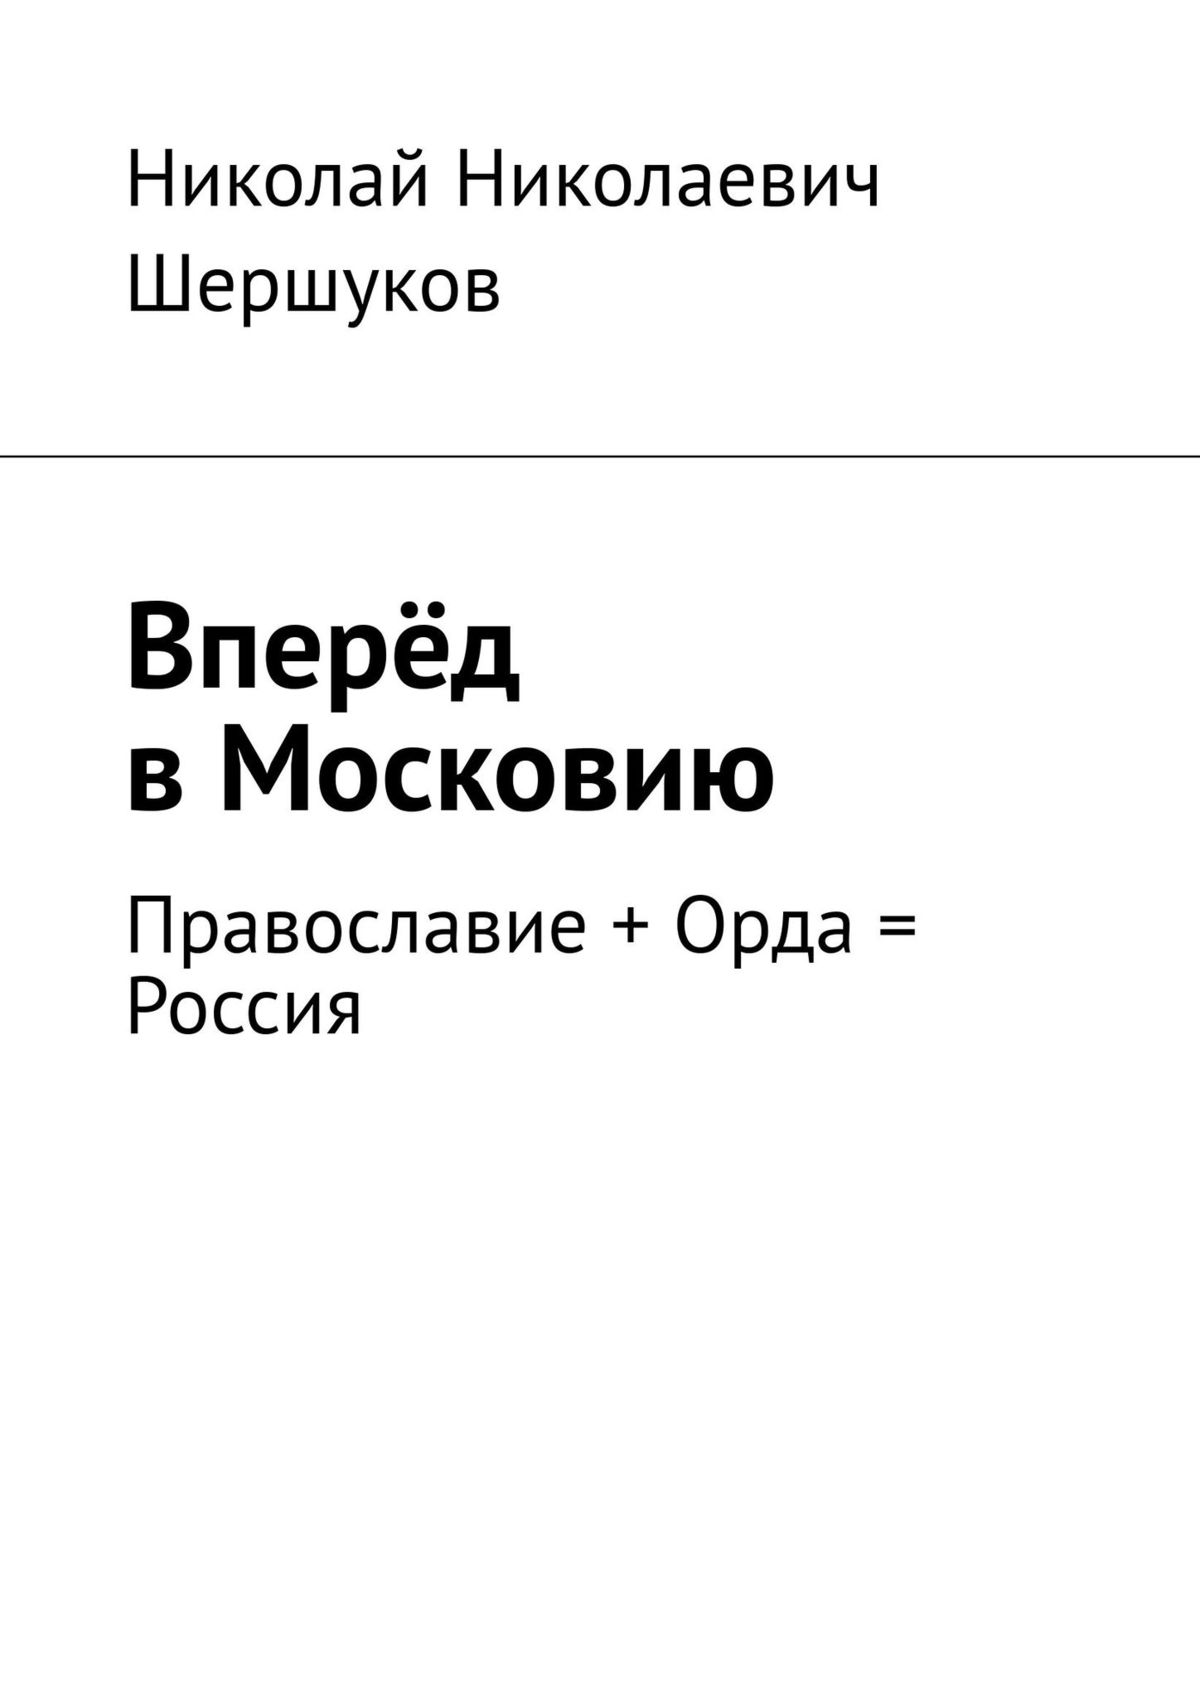 Вперёд в Московию. Стихотворения и проза. Православие + Орда = Россия